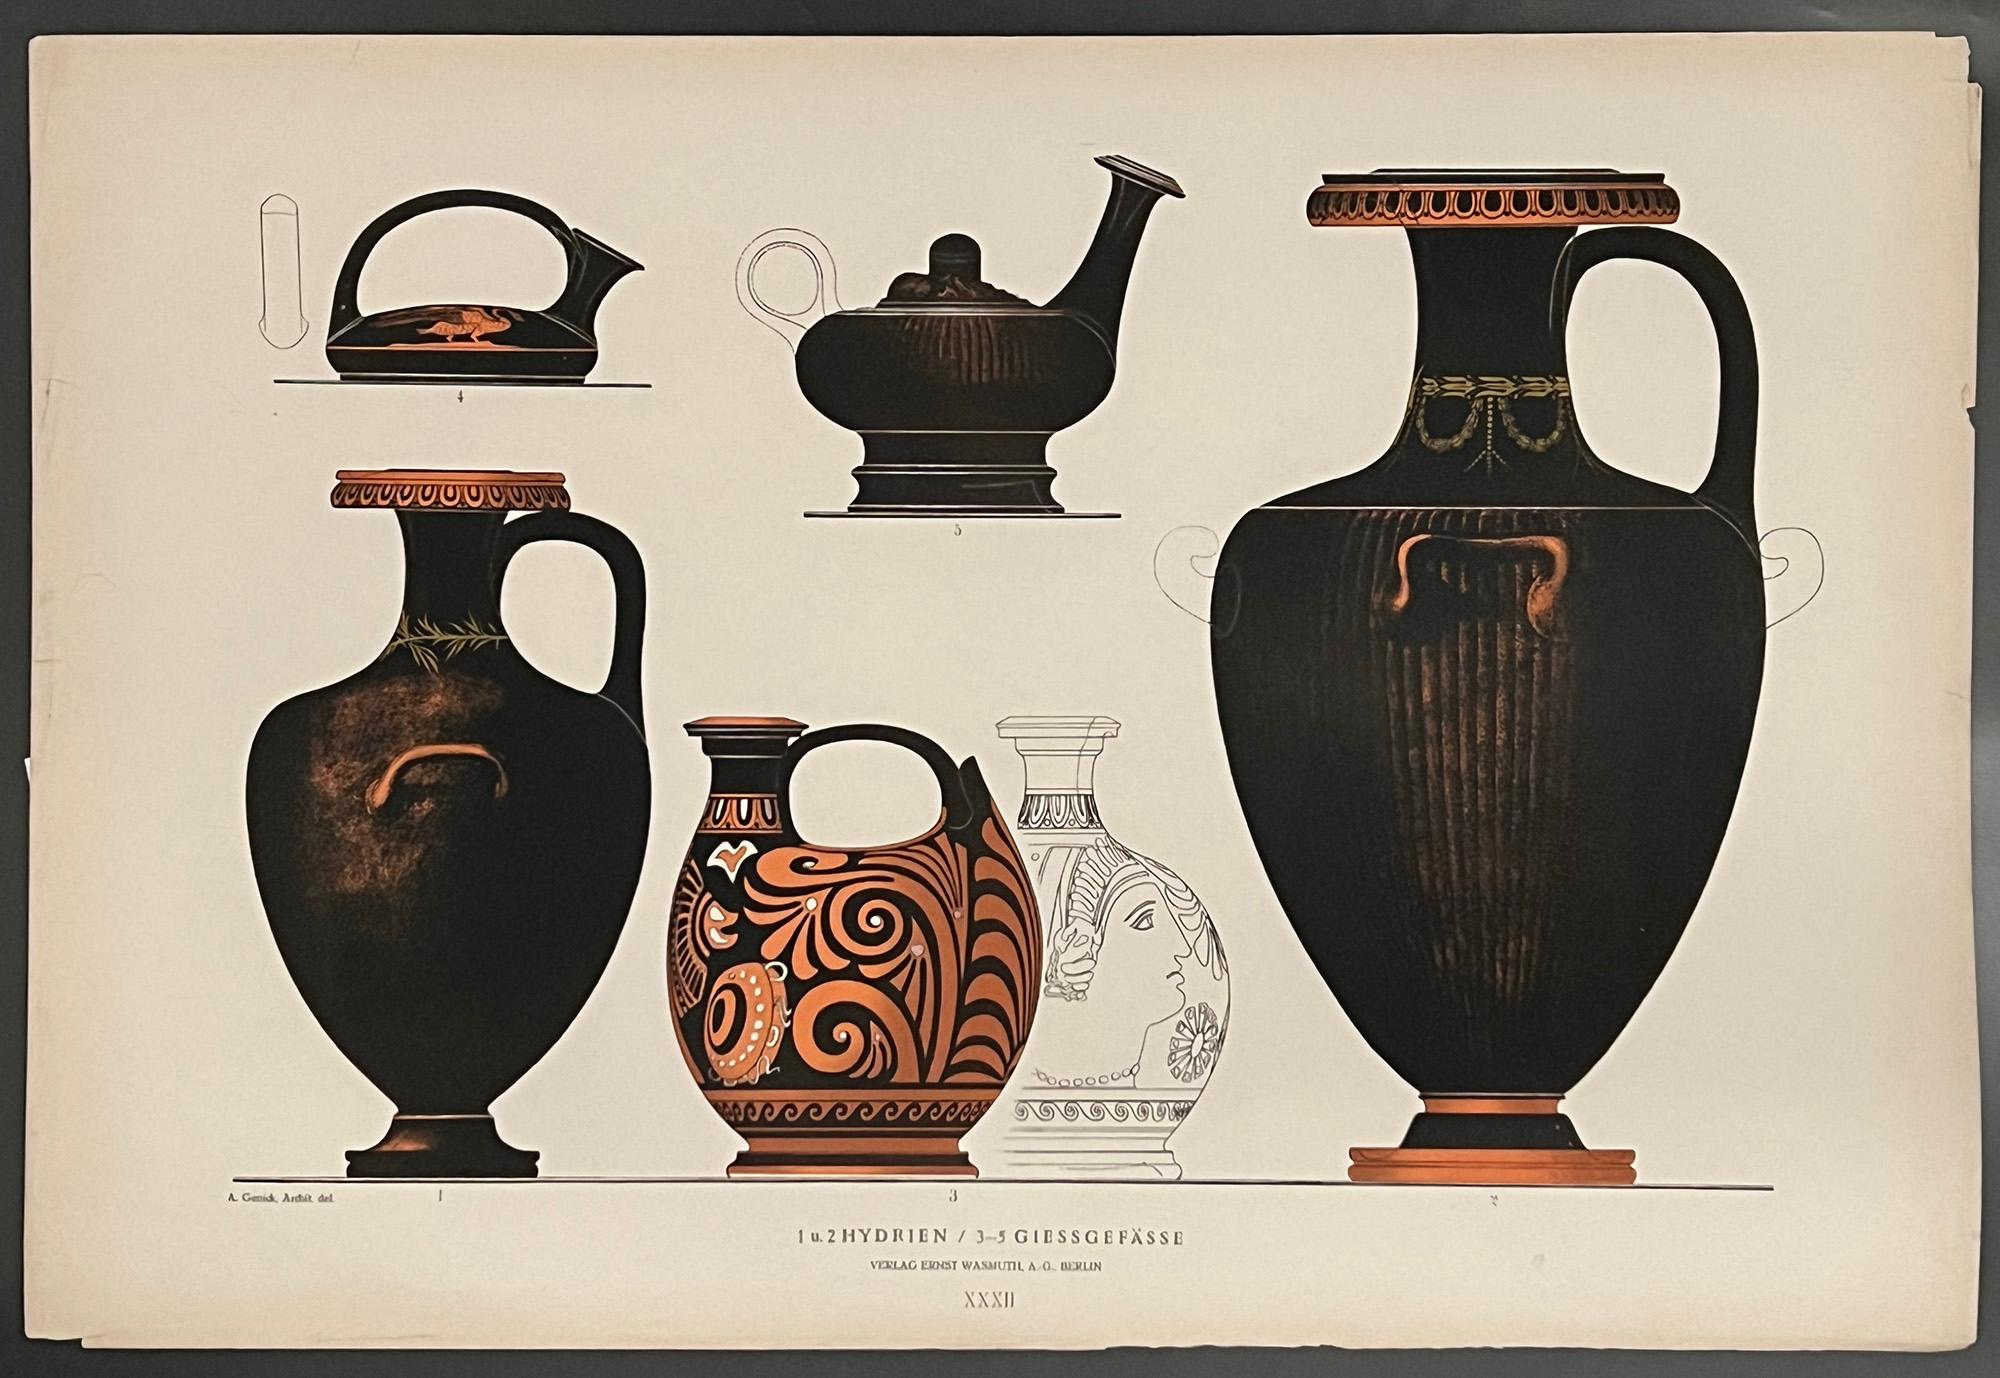 Greek vases - Hydrien - Print by GENICK, Albert.